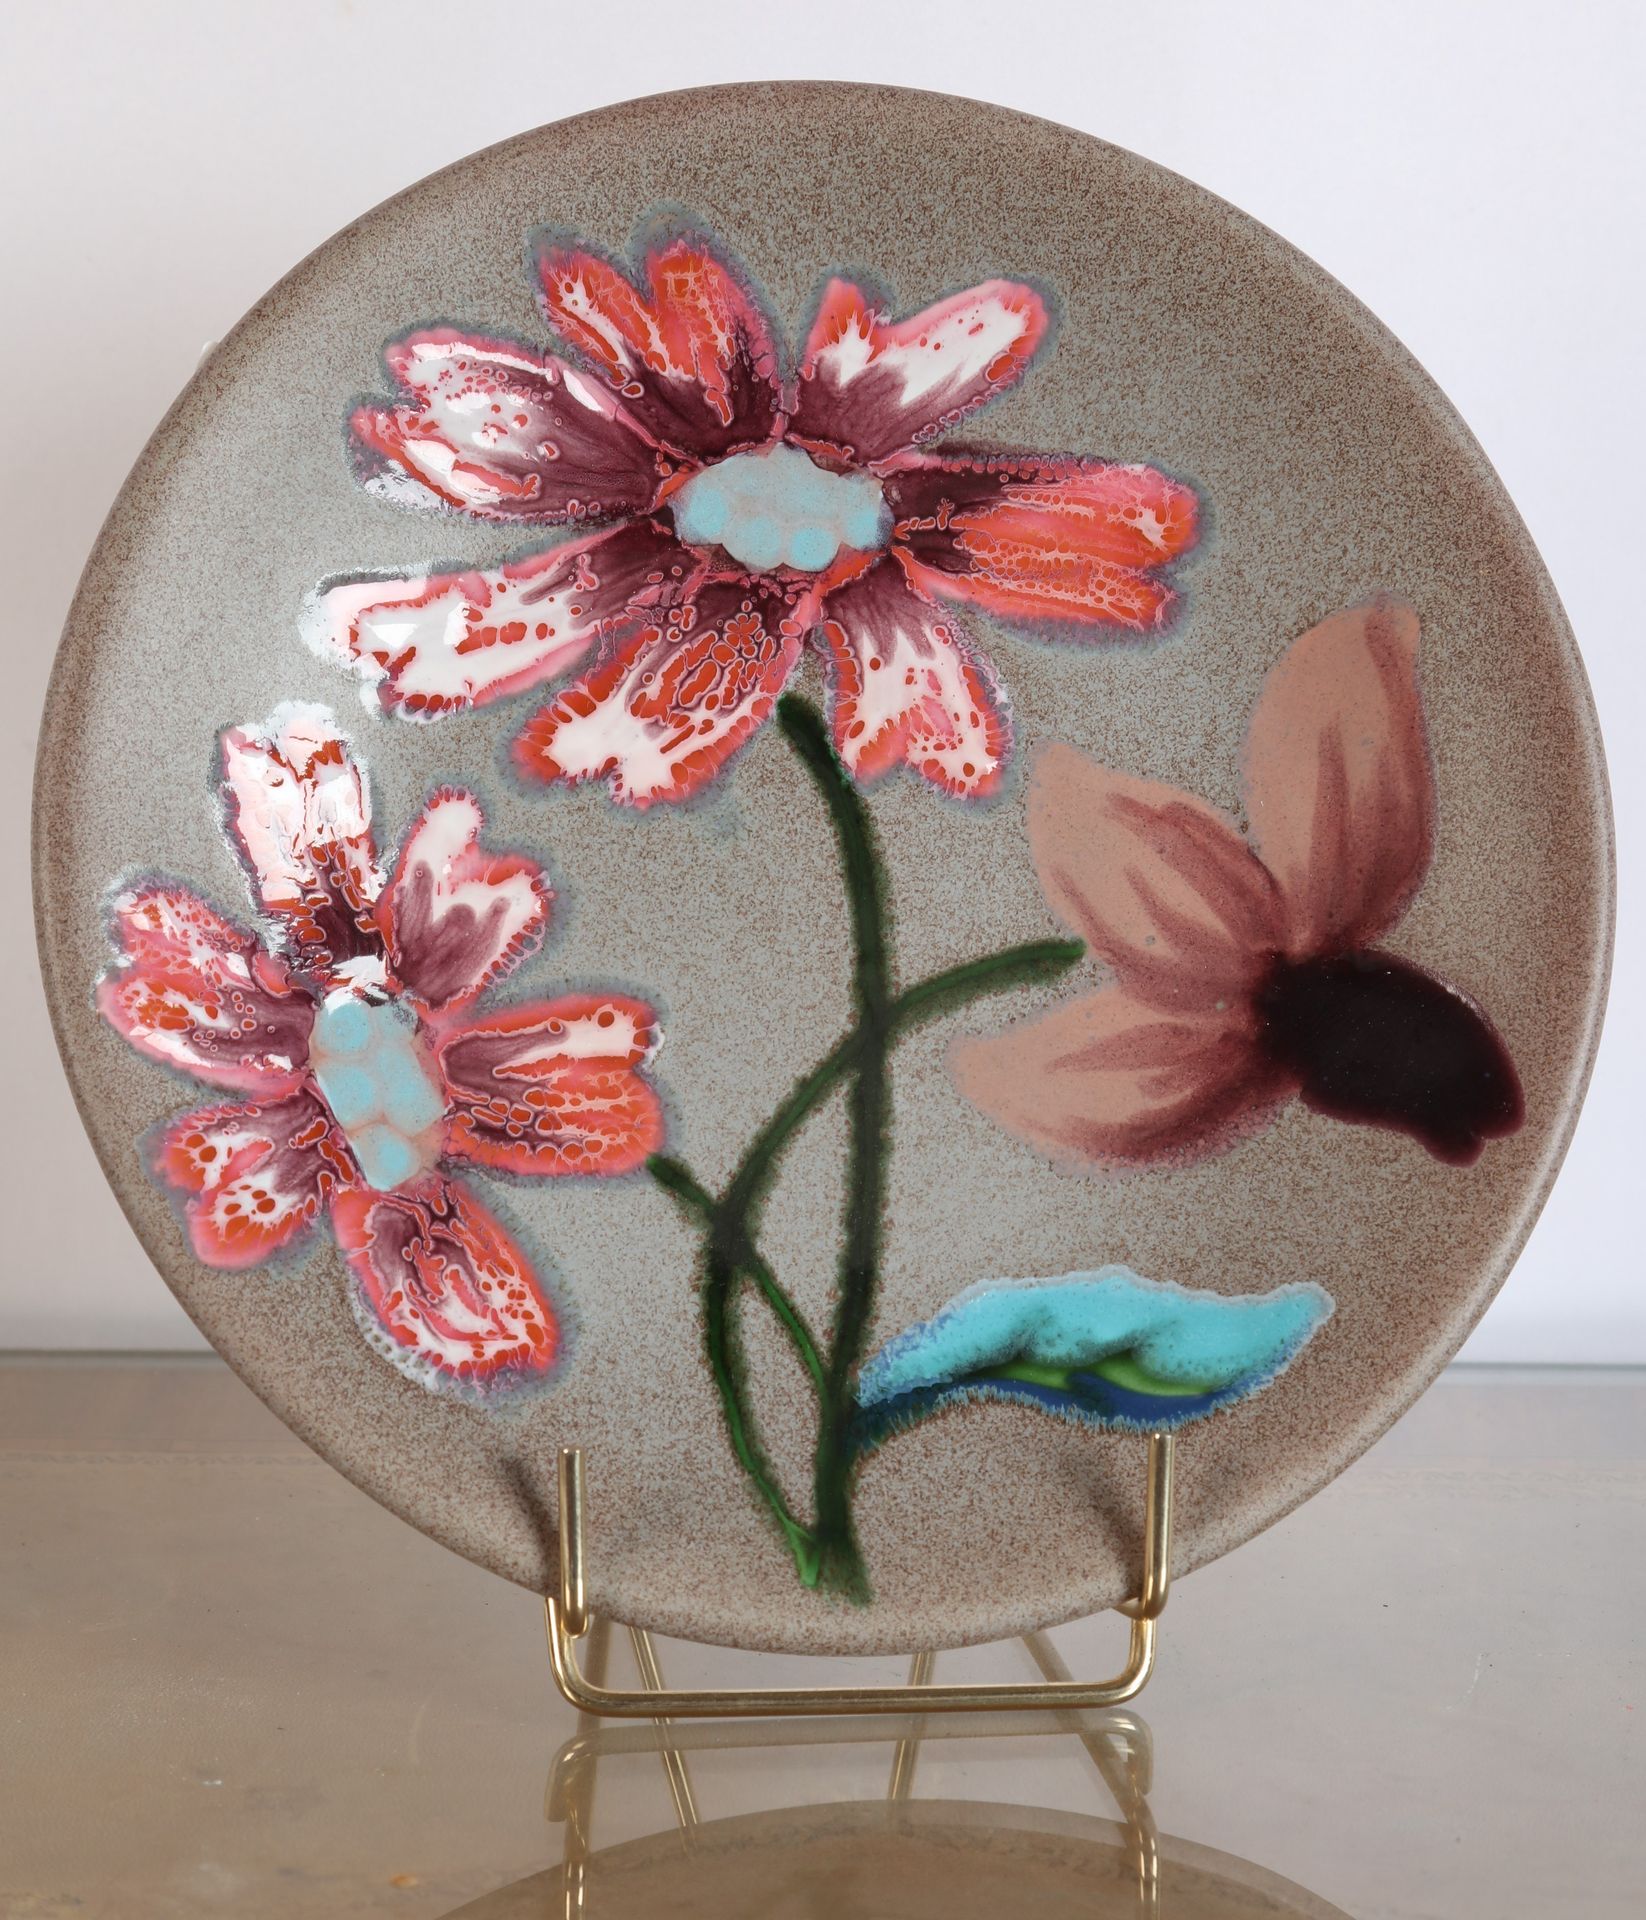 Null O.CONGINS, for RICARD, 花卉装饰的陶盘，带有多色 "反应 "装饰，（广告物品），署名 "Ricard"，全新状态，20